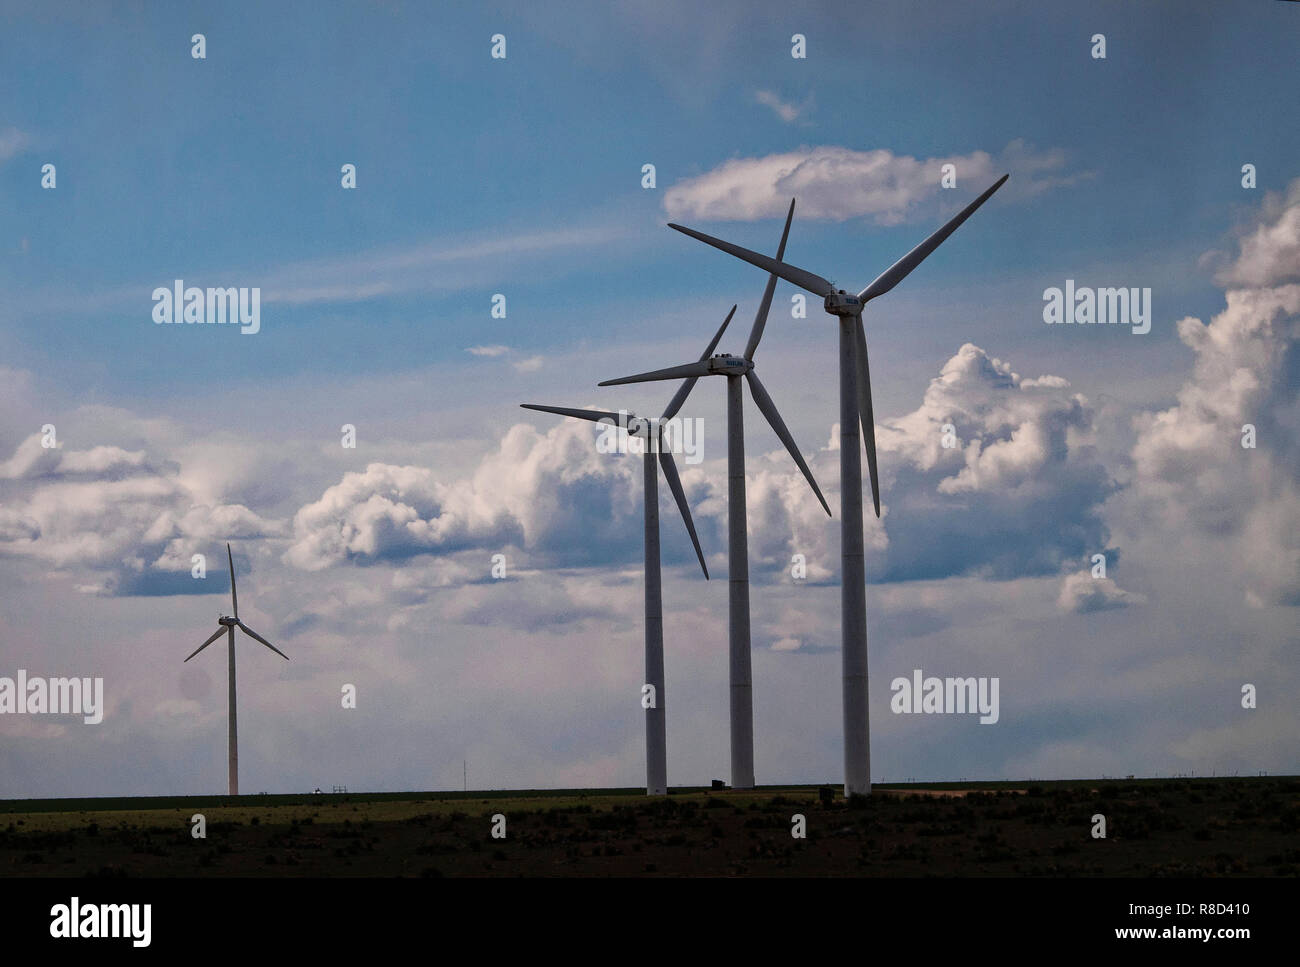 La energía sostenible del viento ayuda a reducir el calentamiento global. Turbinas de viento en el oeste de Texas, generar energía y hace de Texas un líder en la producción de electricidad. Foto de stock